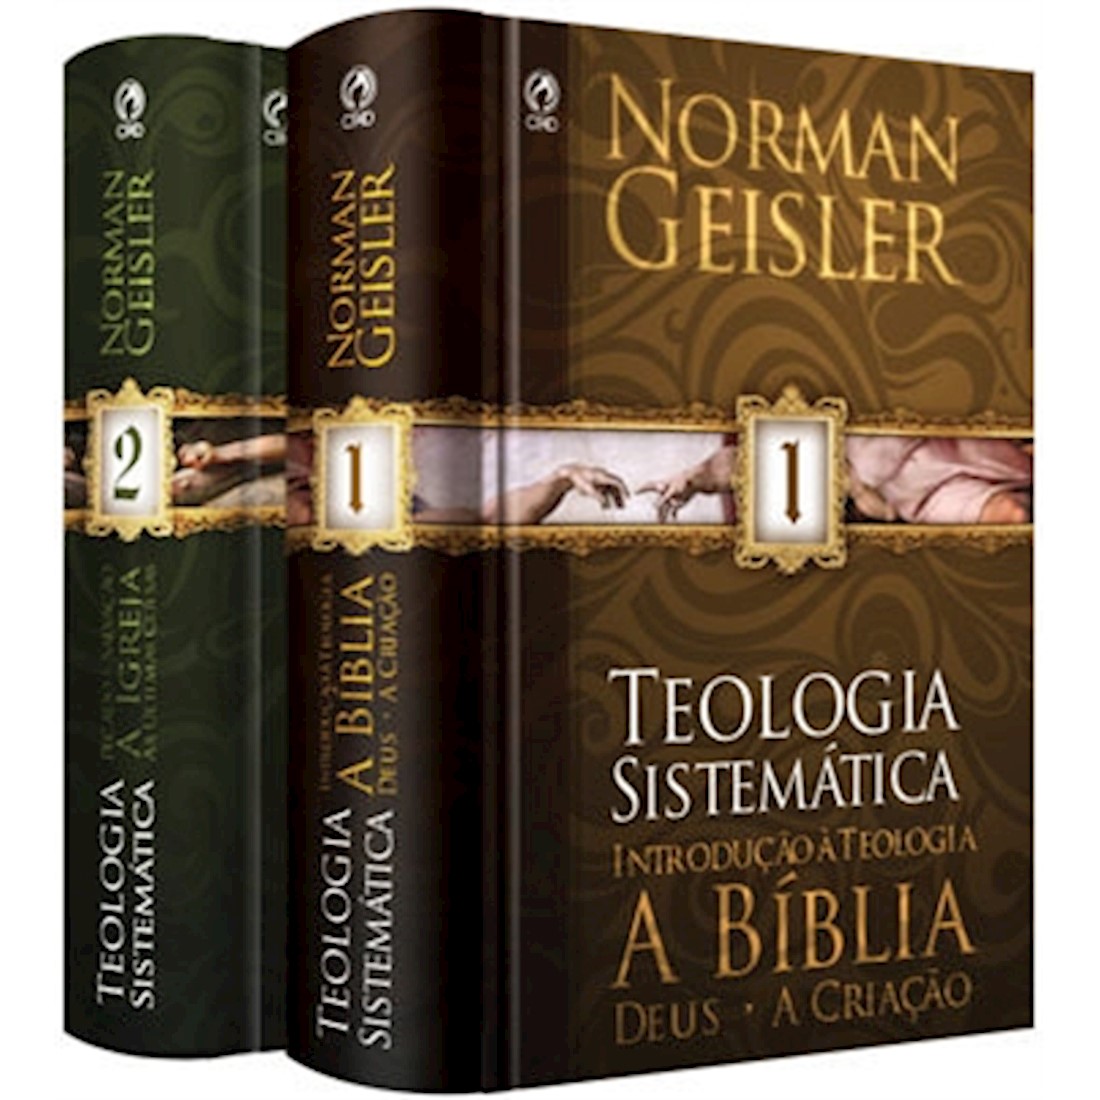 Livro Teologia Sistemática de Norman Geisler